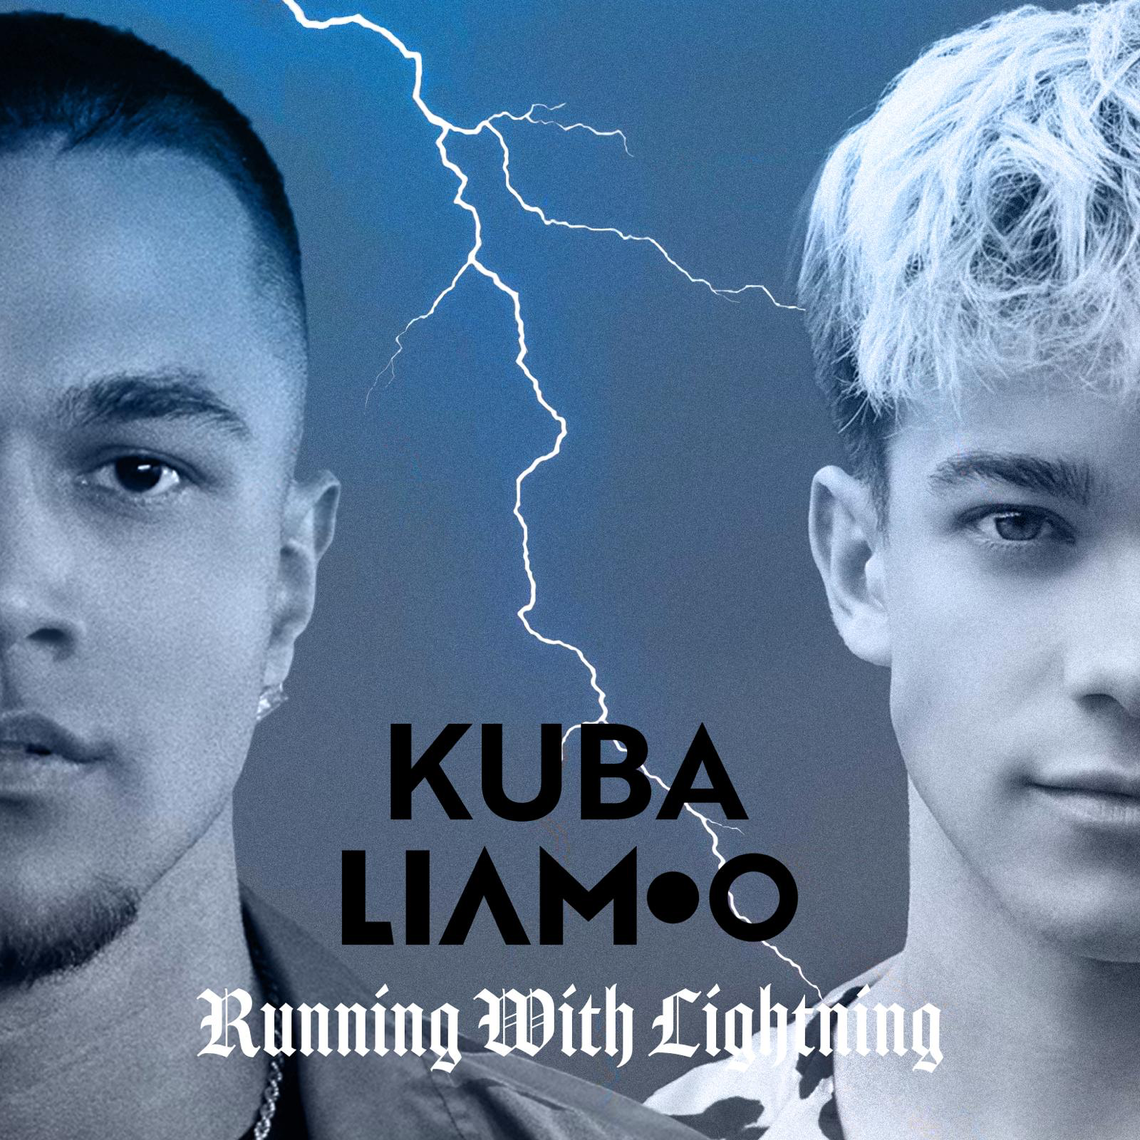 Kuba Szmajkowski & LIAMOO - Running With Lightning! Posłuchaj nowości od zwycięzcy TTBZ!